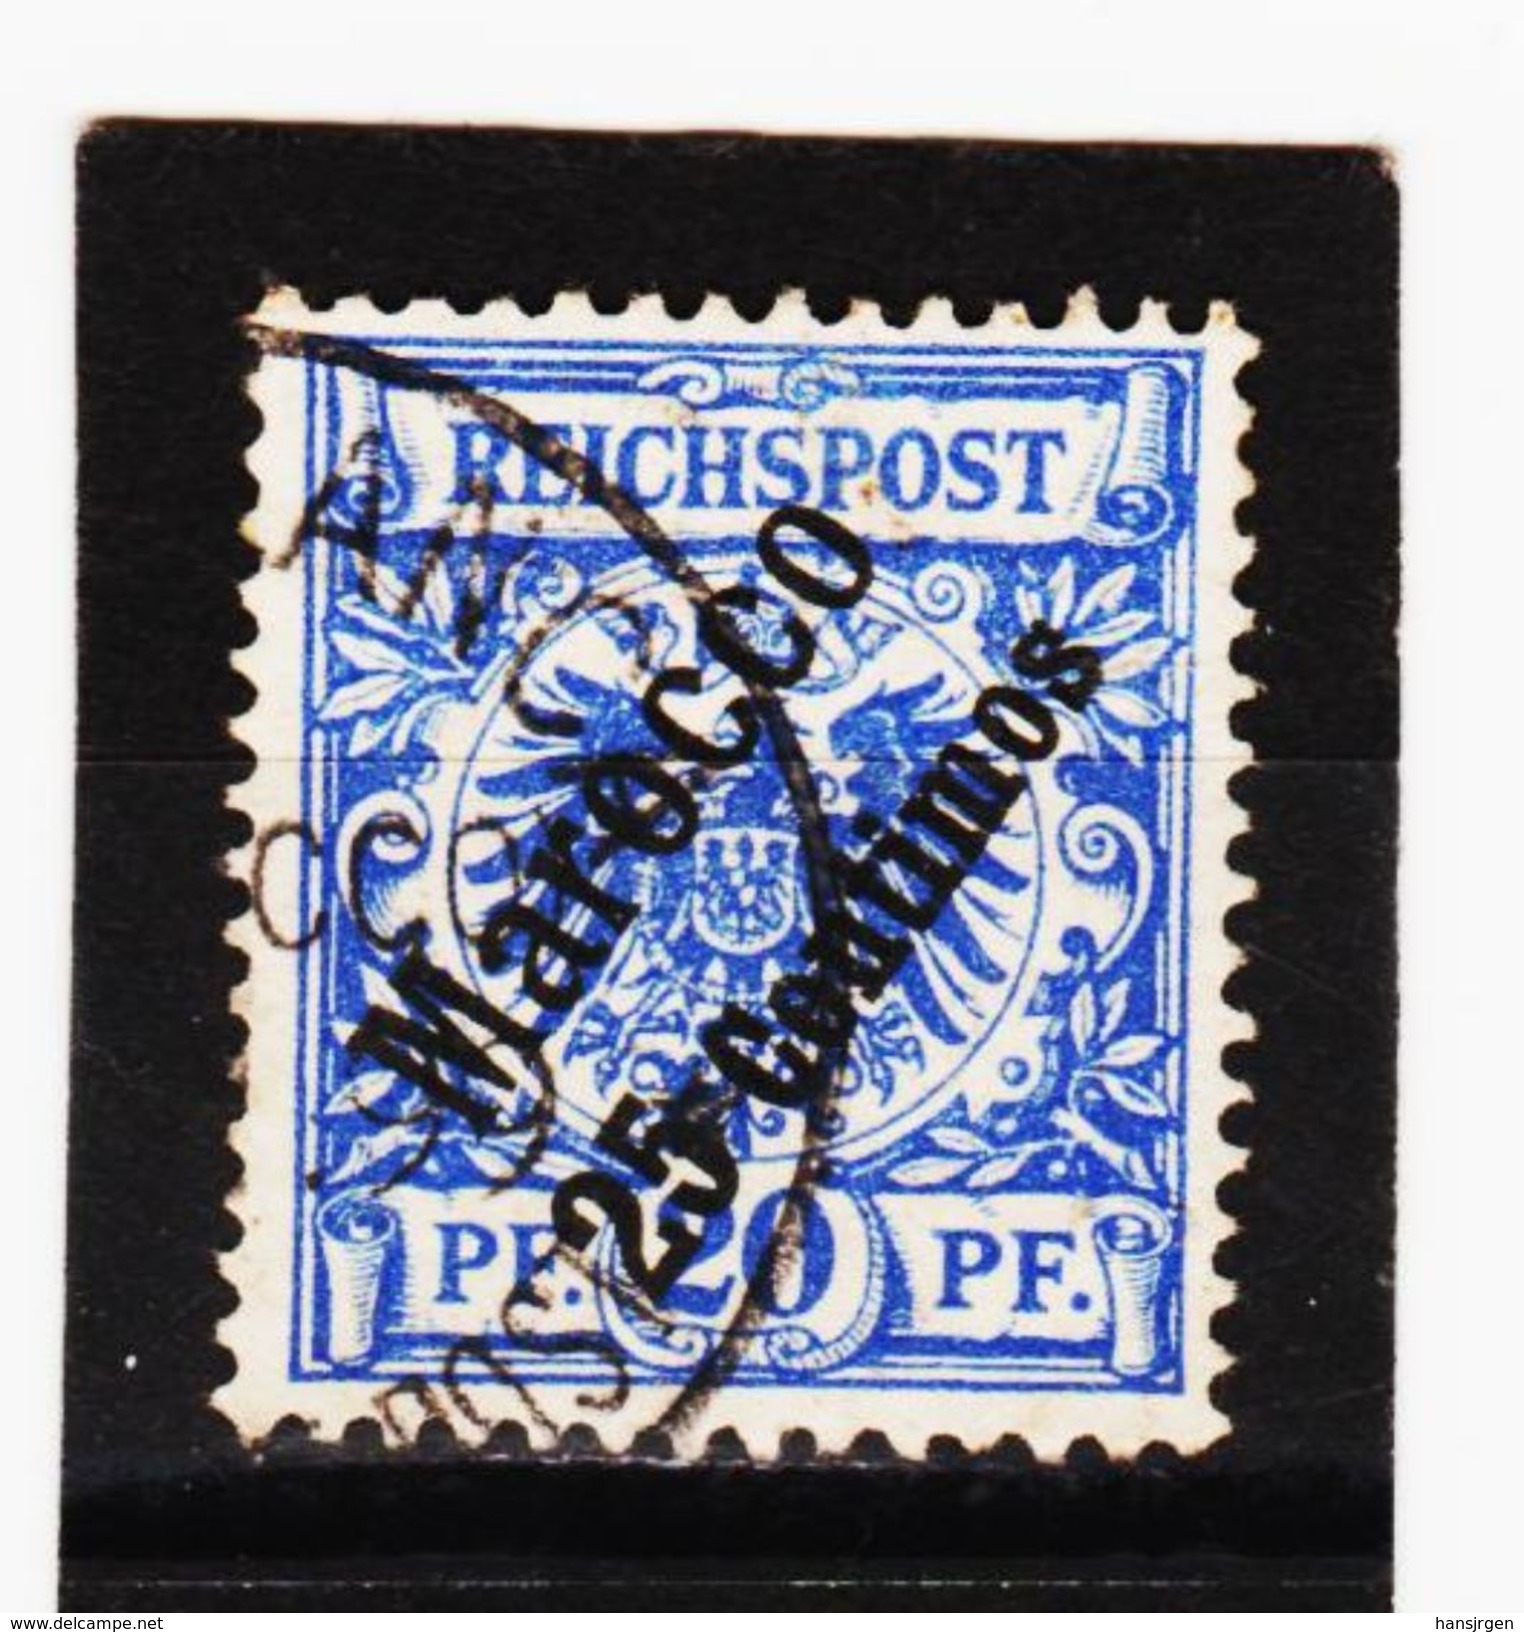 KAR436 DEUTSCHE AUSLANDSPOSTÄMTER MAROKKO 1899 MICHL 4 Used / Gestempelt Siehe ABBILDUNG - Deutsche Post In Marokko